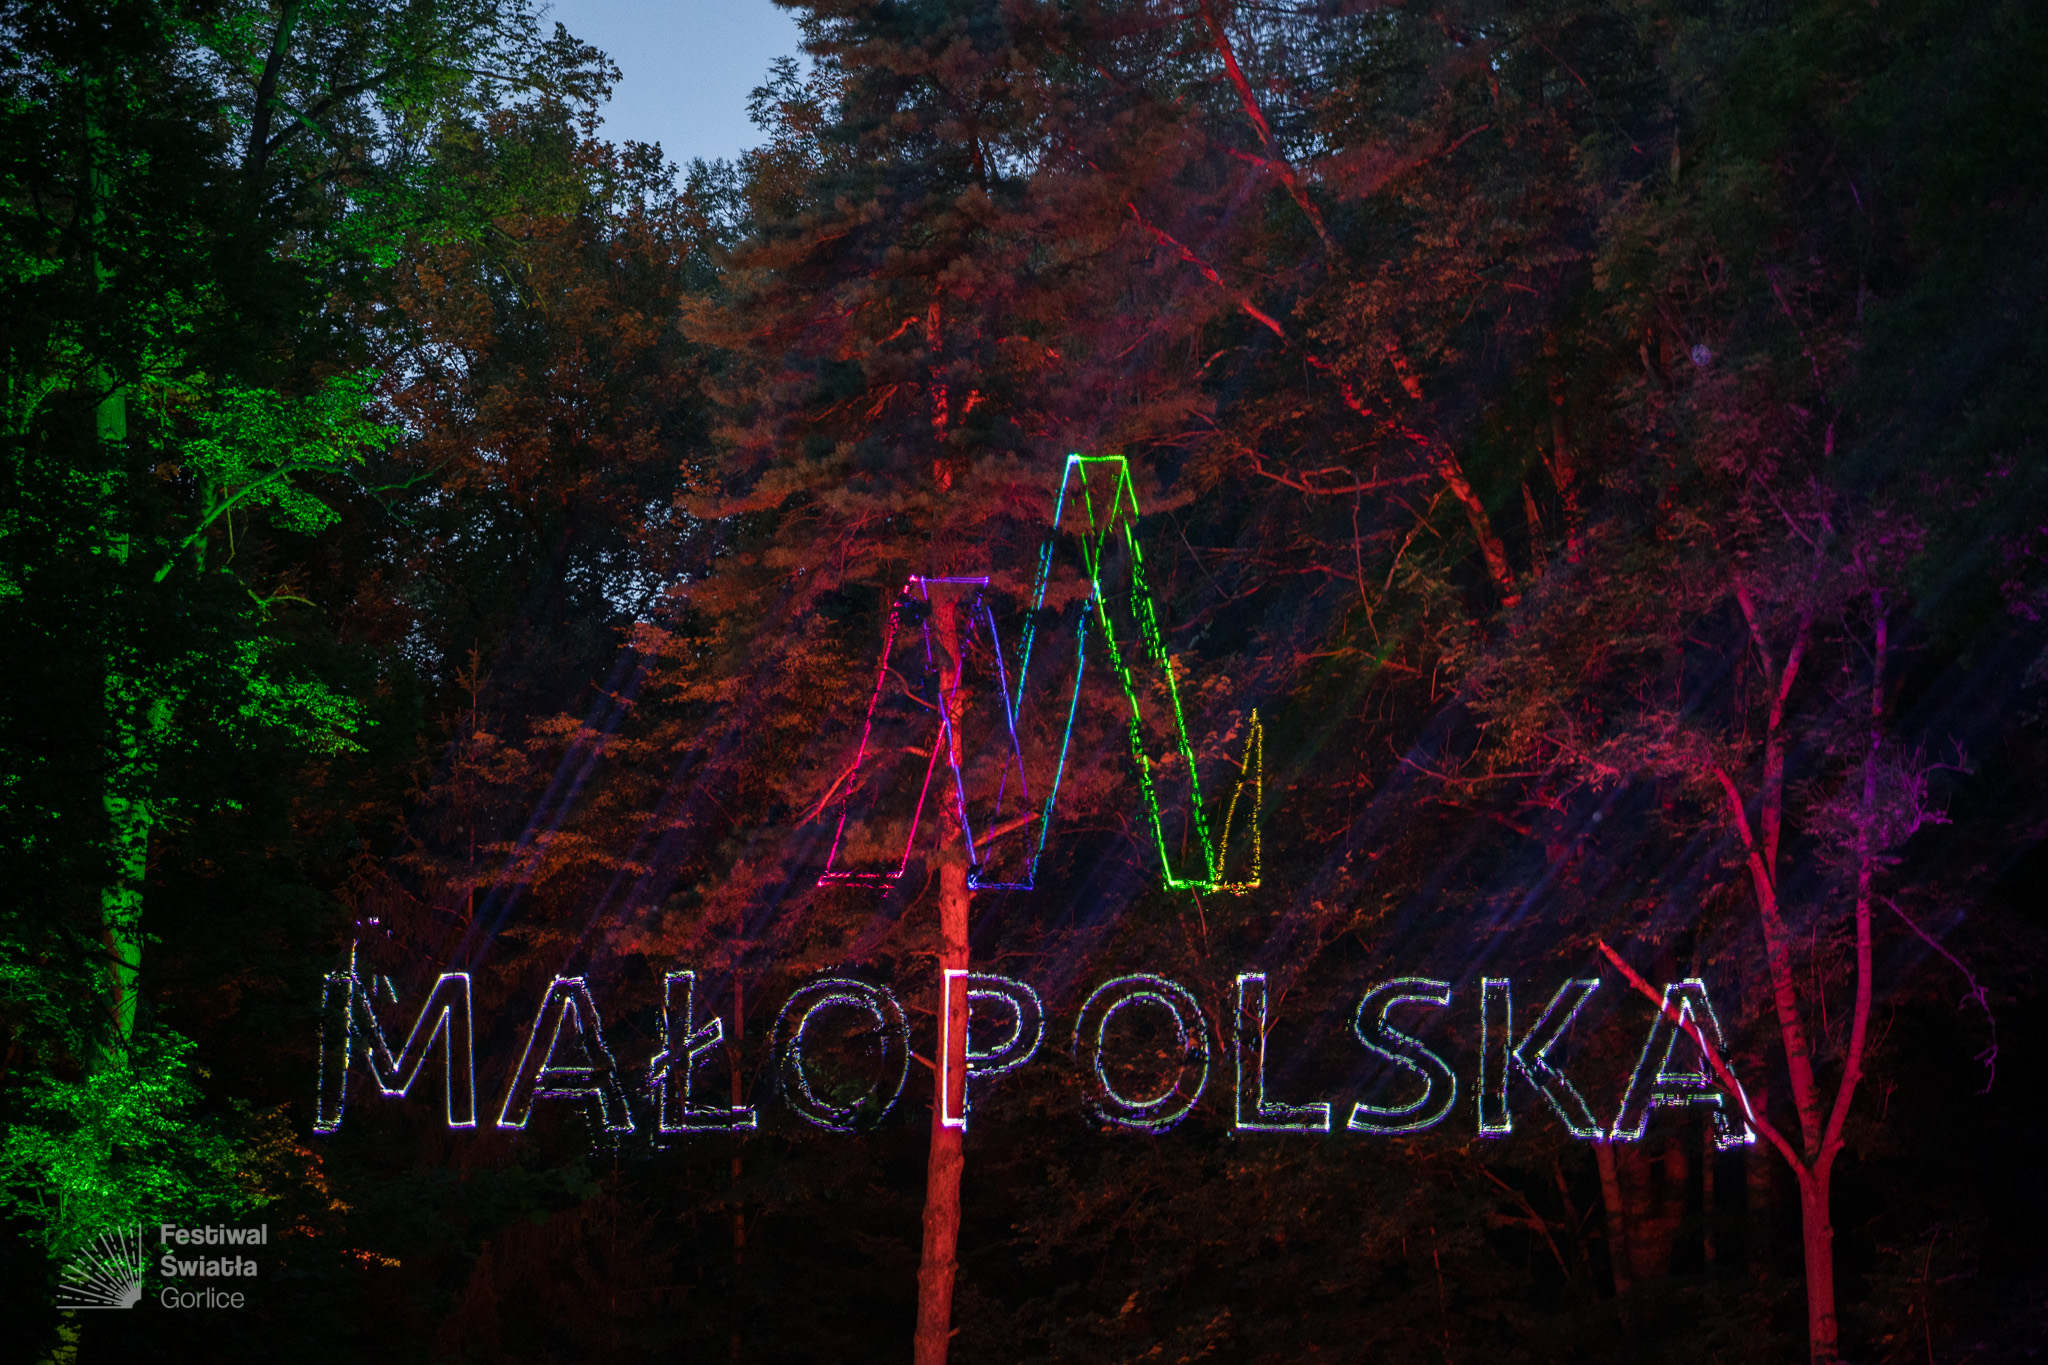 logotyp Małopolski wyświetlony podczas Festiwalu Światła w Gorlicach